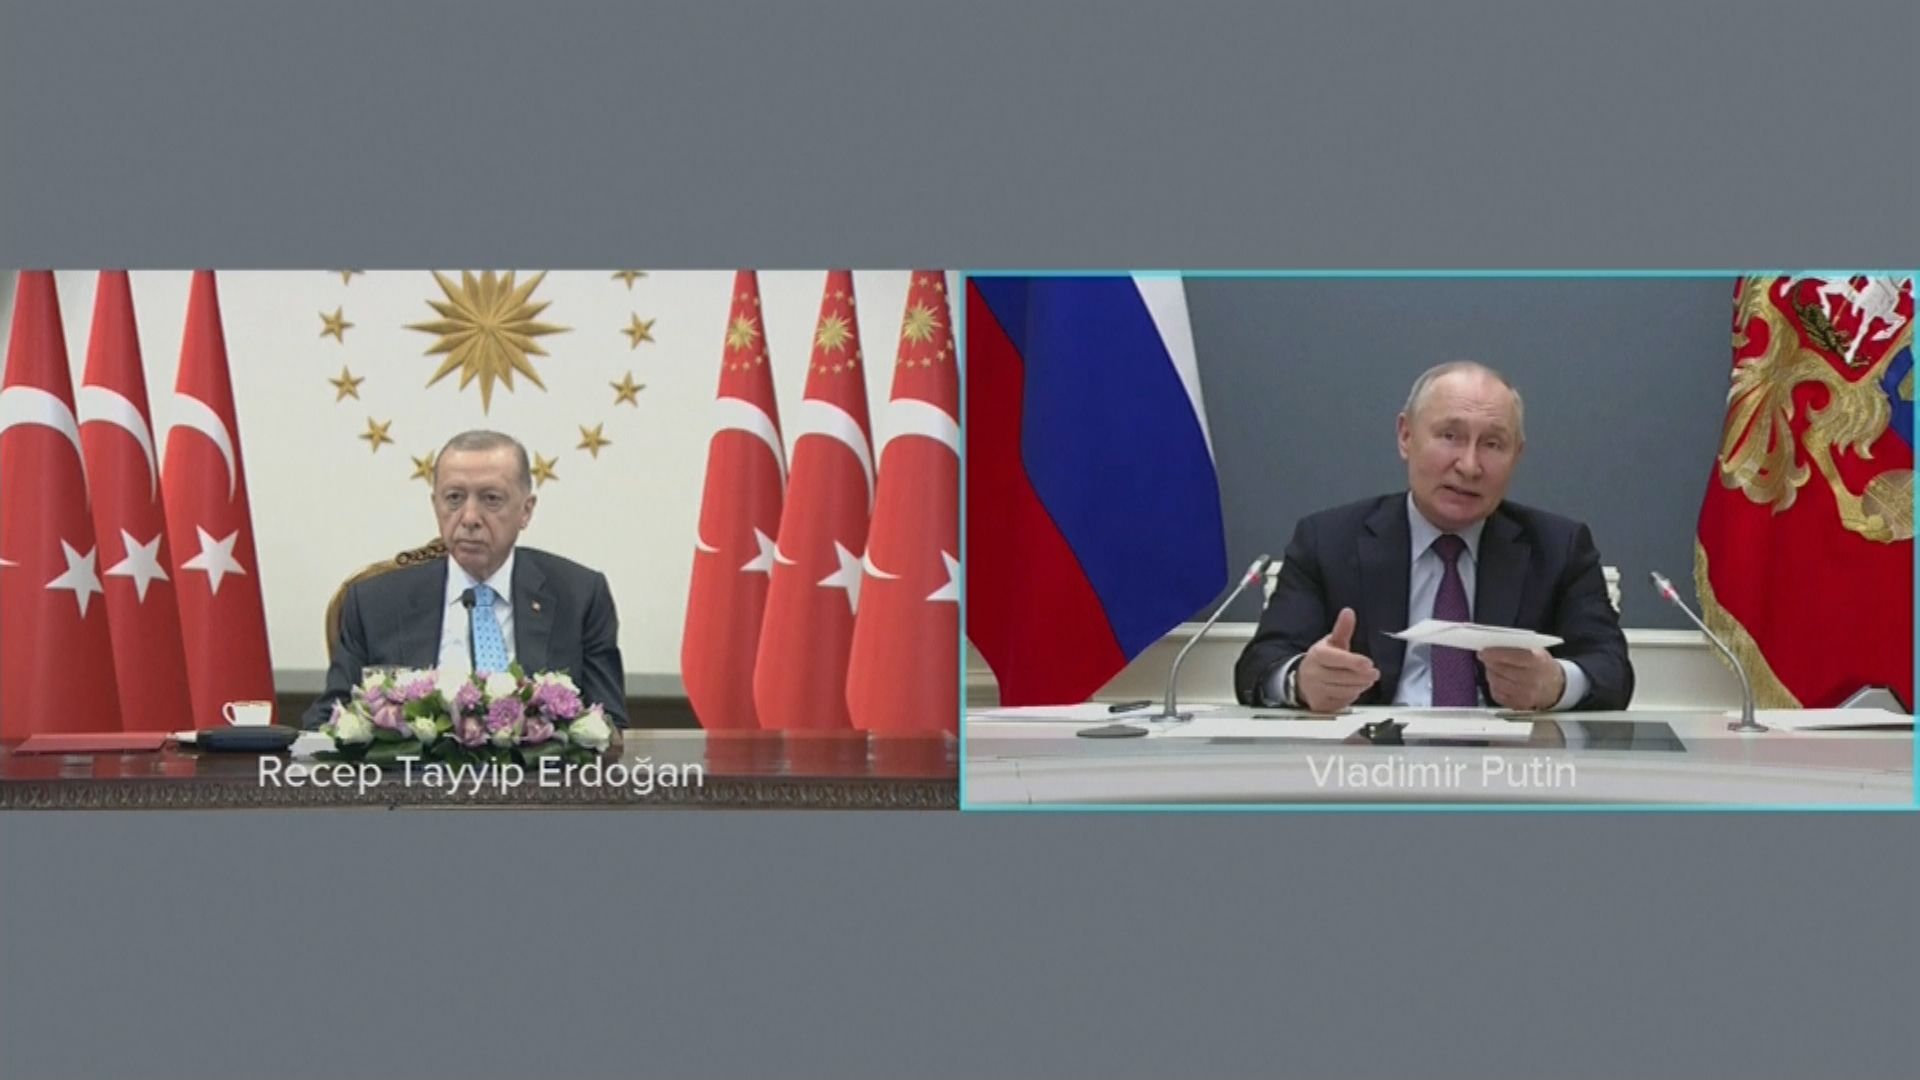 土耳其與俄羅斯總統視頻參與核電站燃料交付儀式